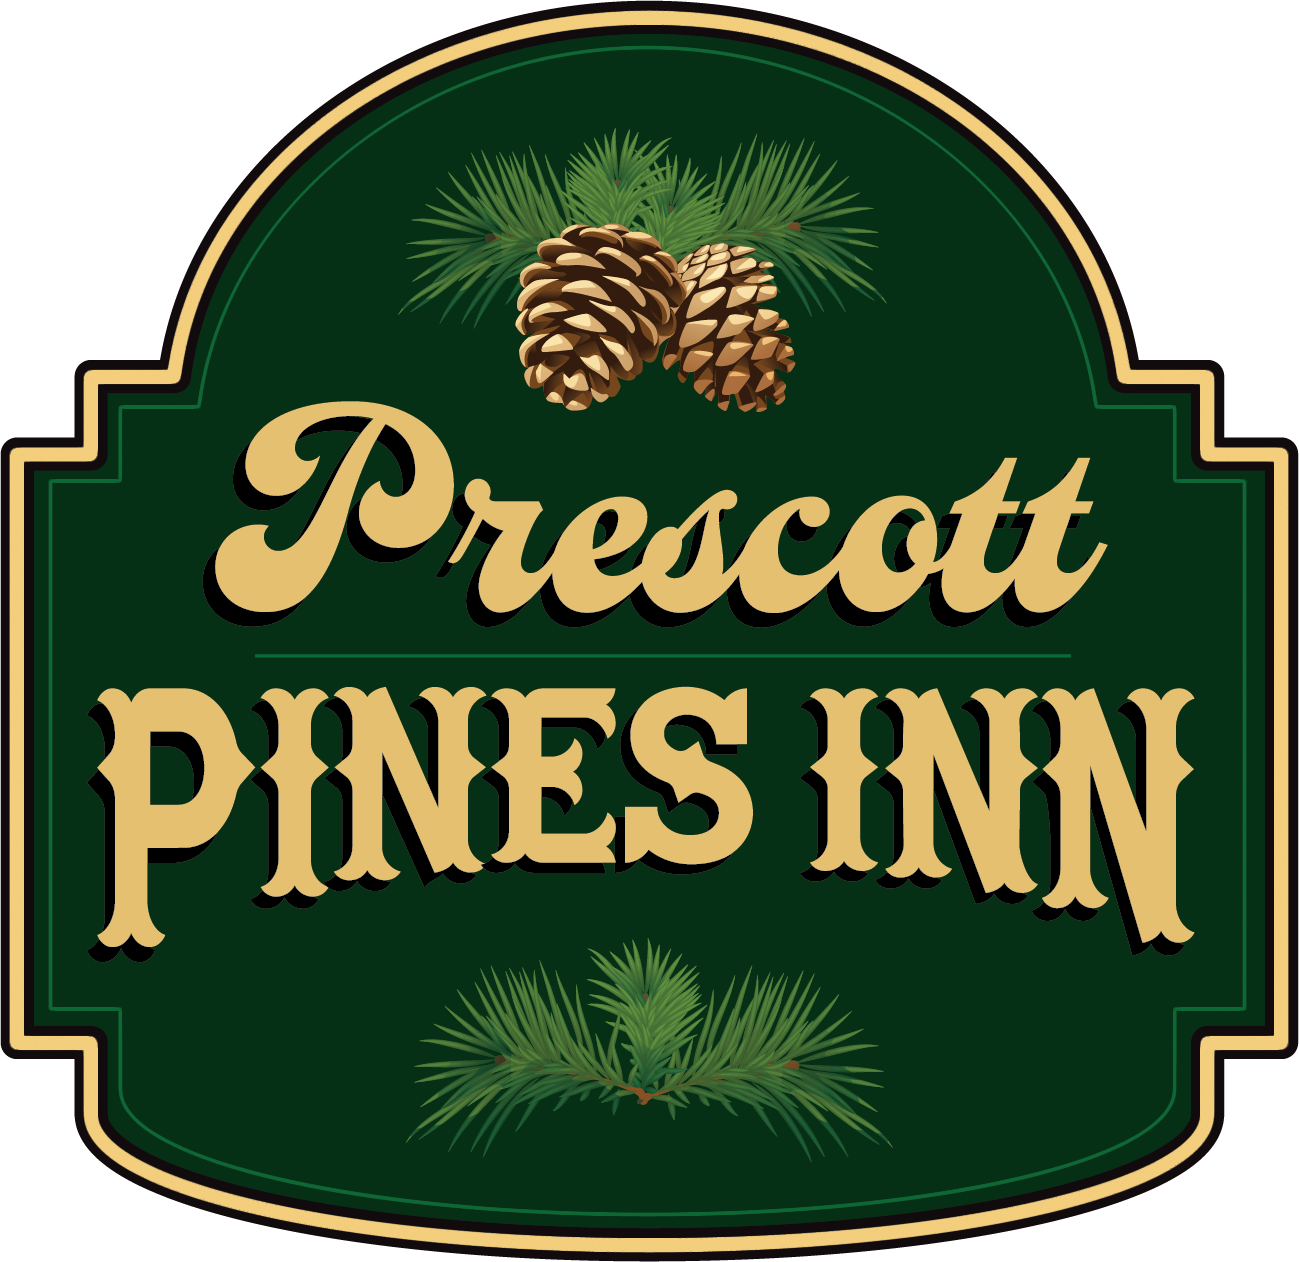 Prescott Pines Inn